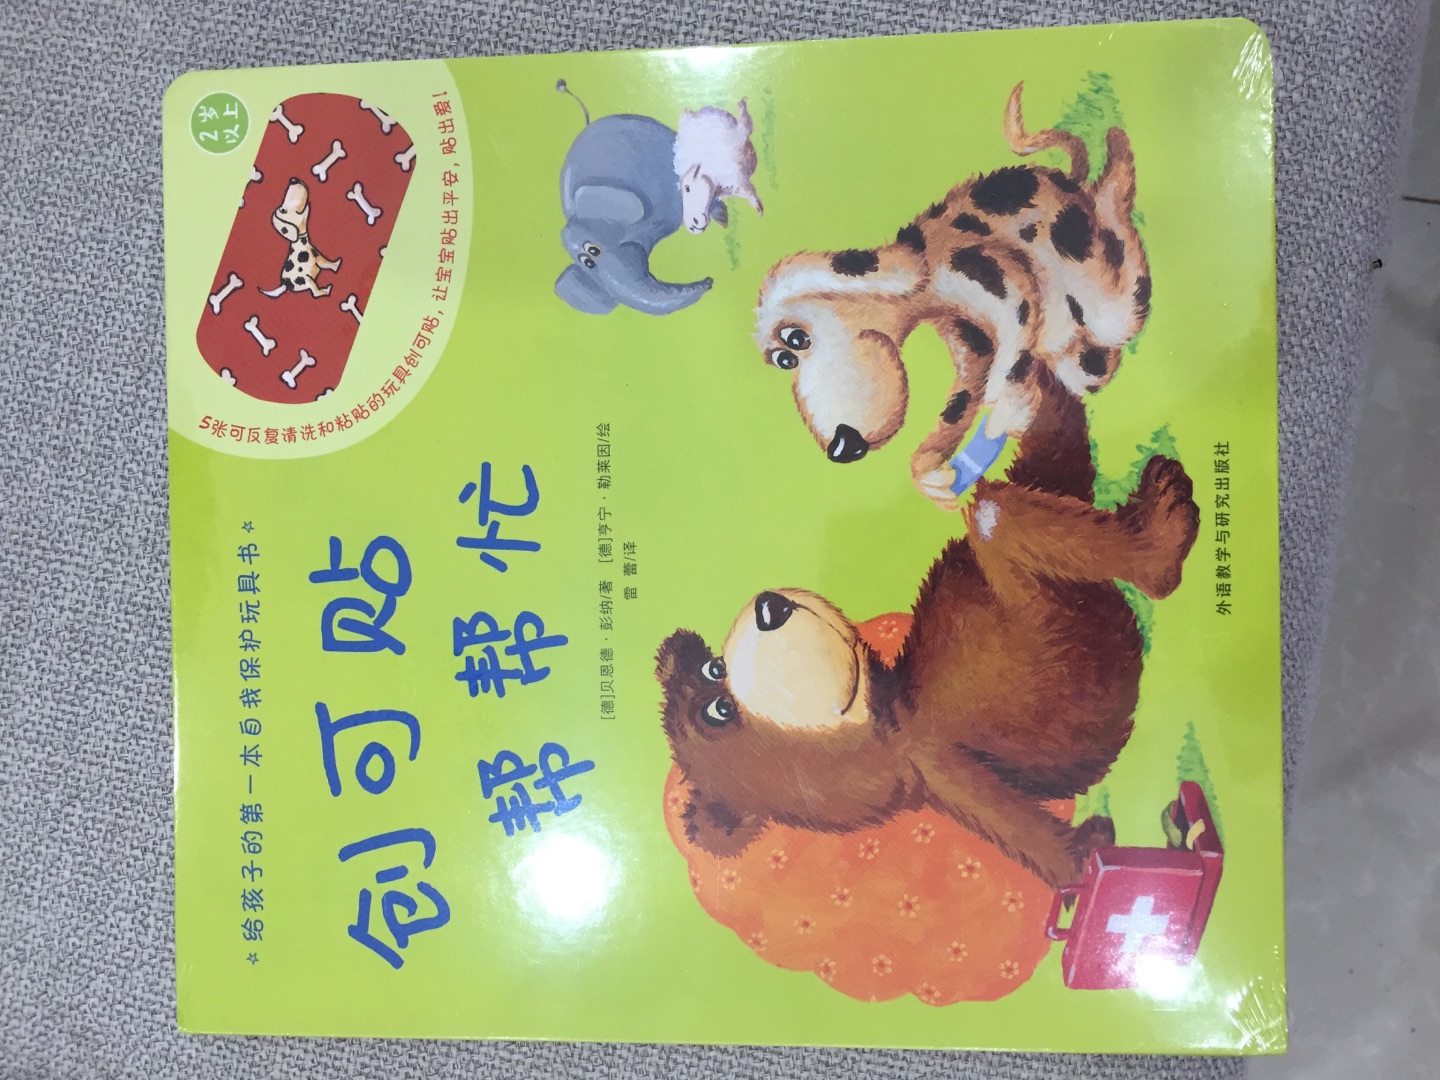 这本书很有创意，让宝宝自己动手给小动物贴创可贴